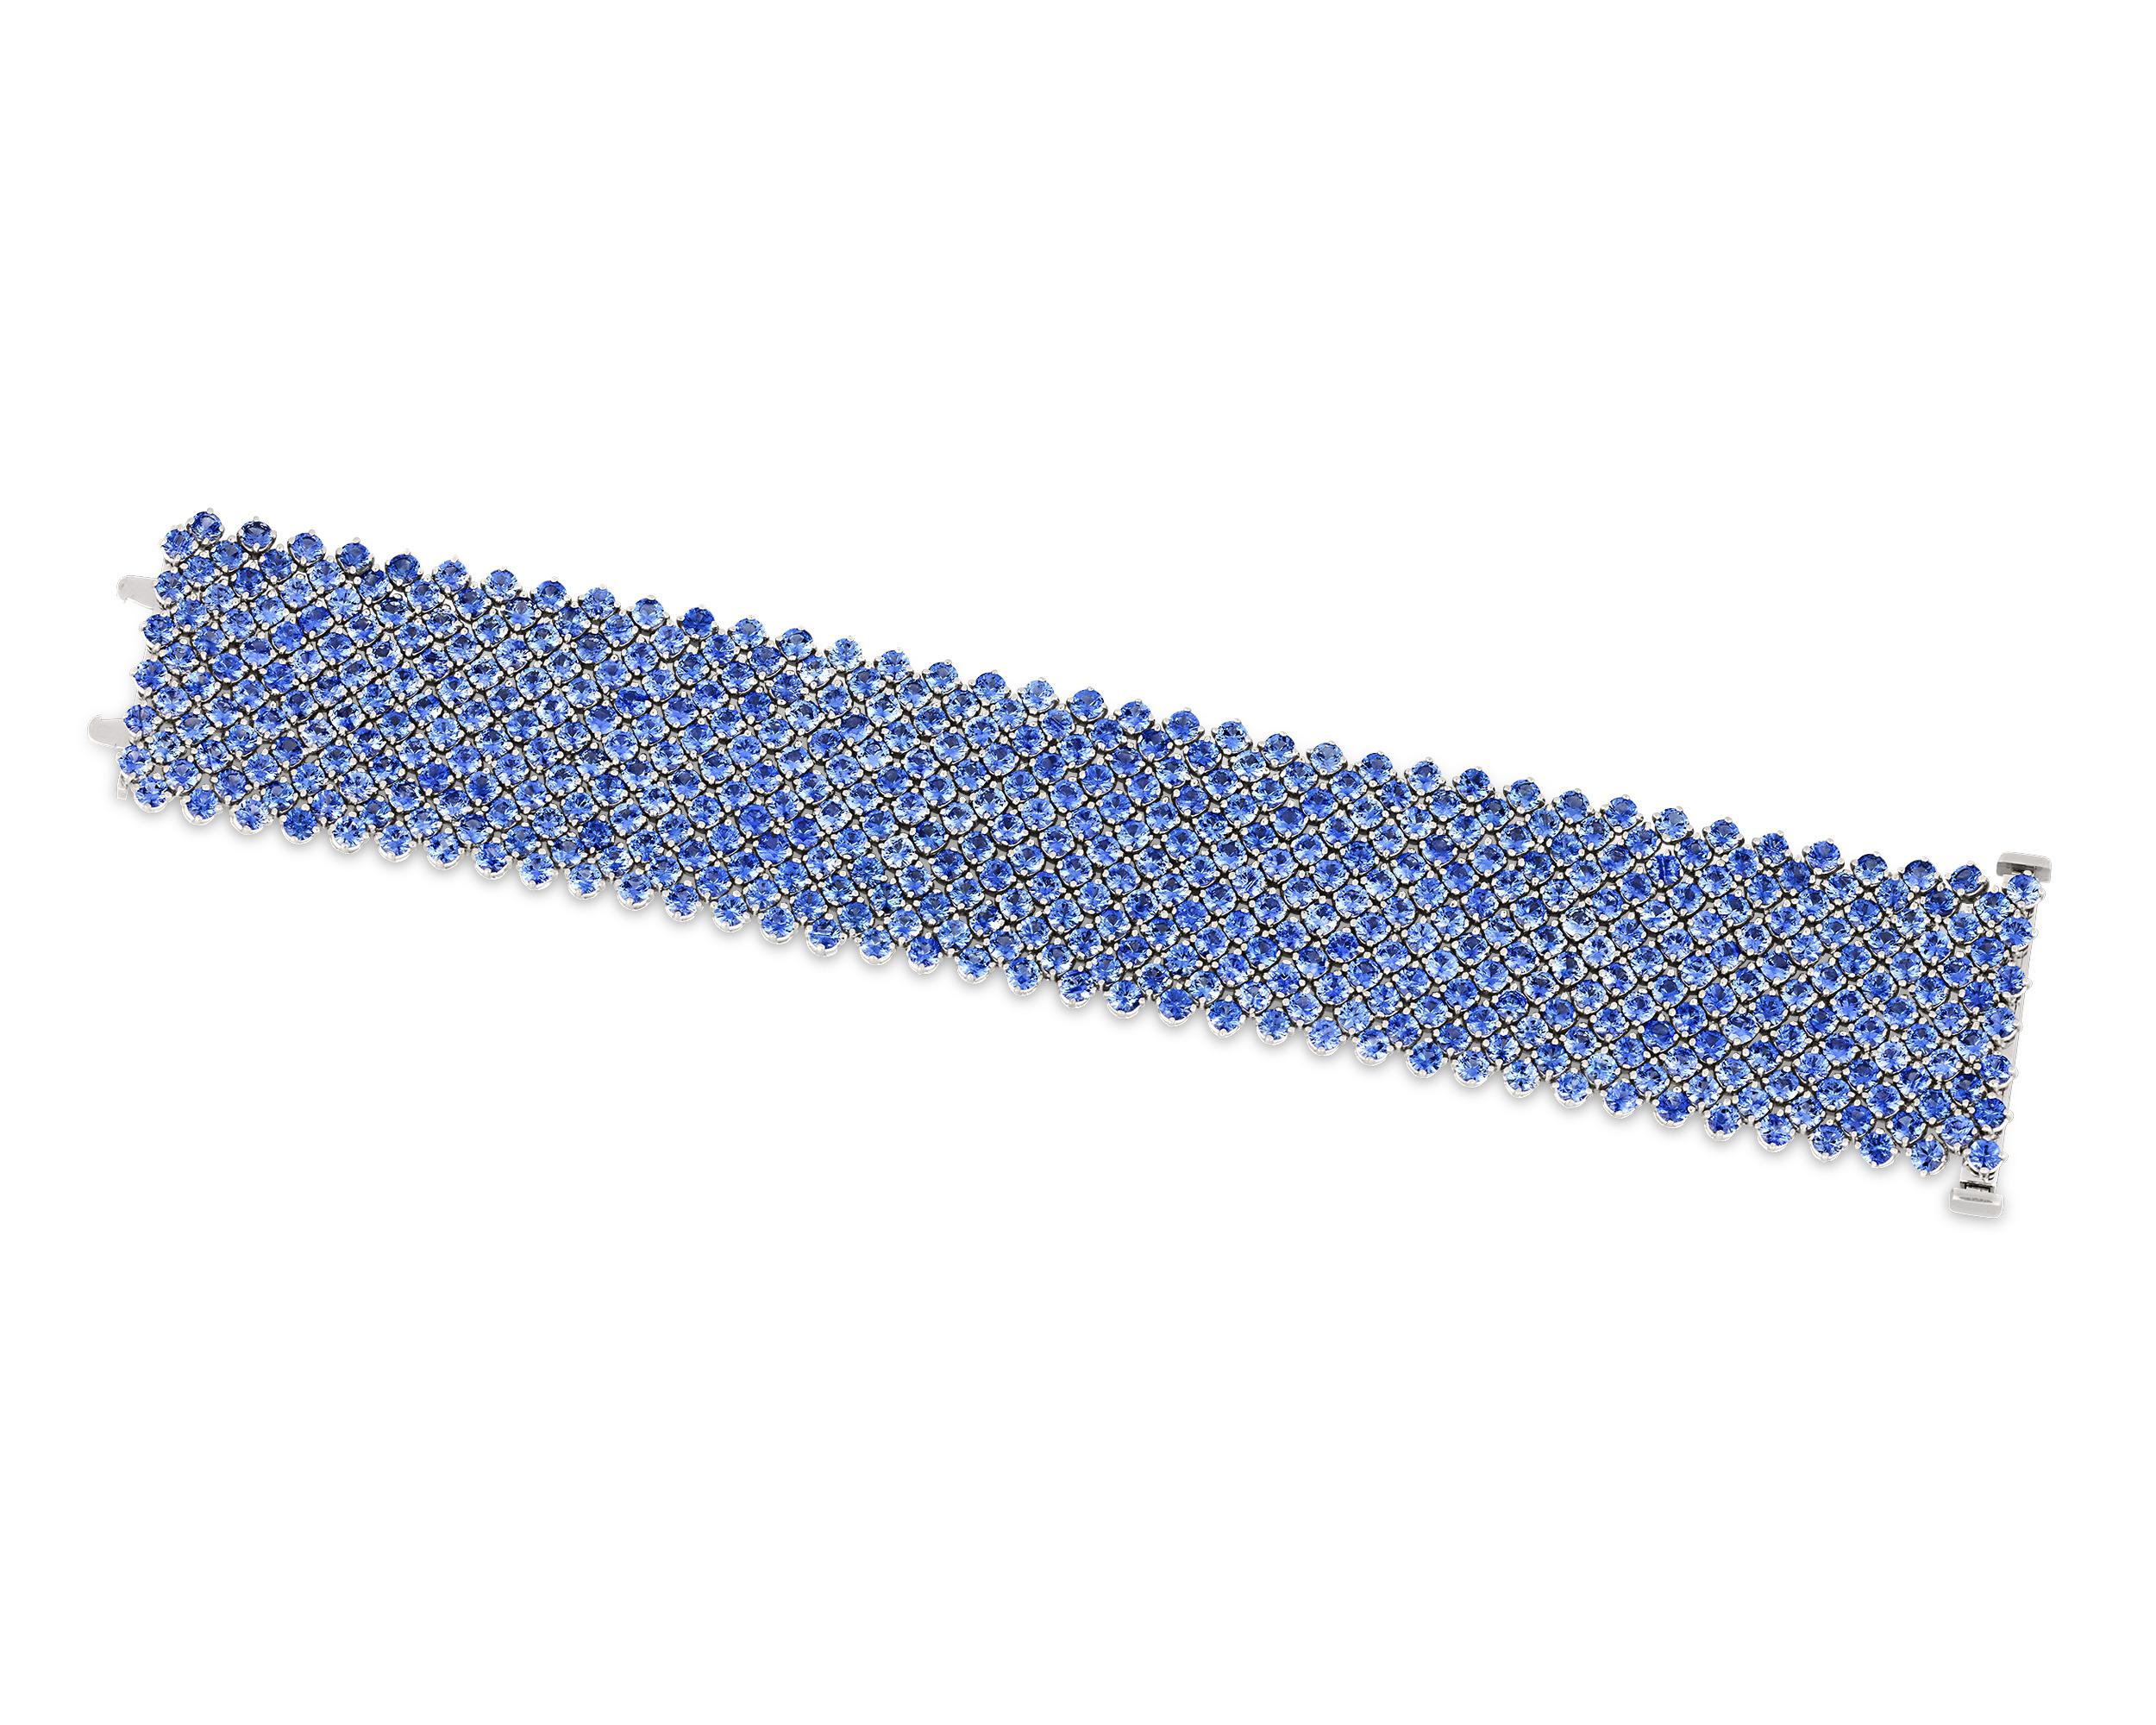 Les 494 saphirs bleus veloutés de ce bracelet séduisant cascadent comme de l'eau autour du poignet. Certifiés par C.I.C., ces bijoux remarquables proviennent de Ceylan et de Madagascar et totalisent 62,73 carats, d'une teinte très recherchée.